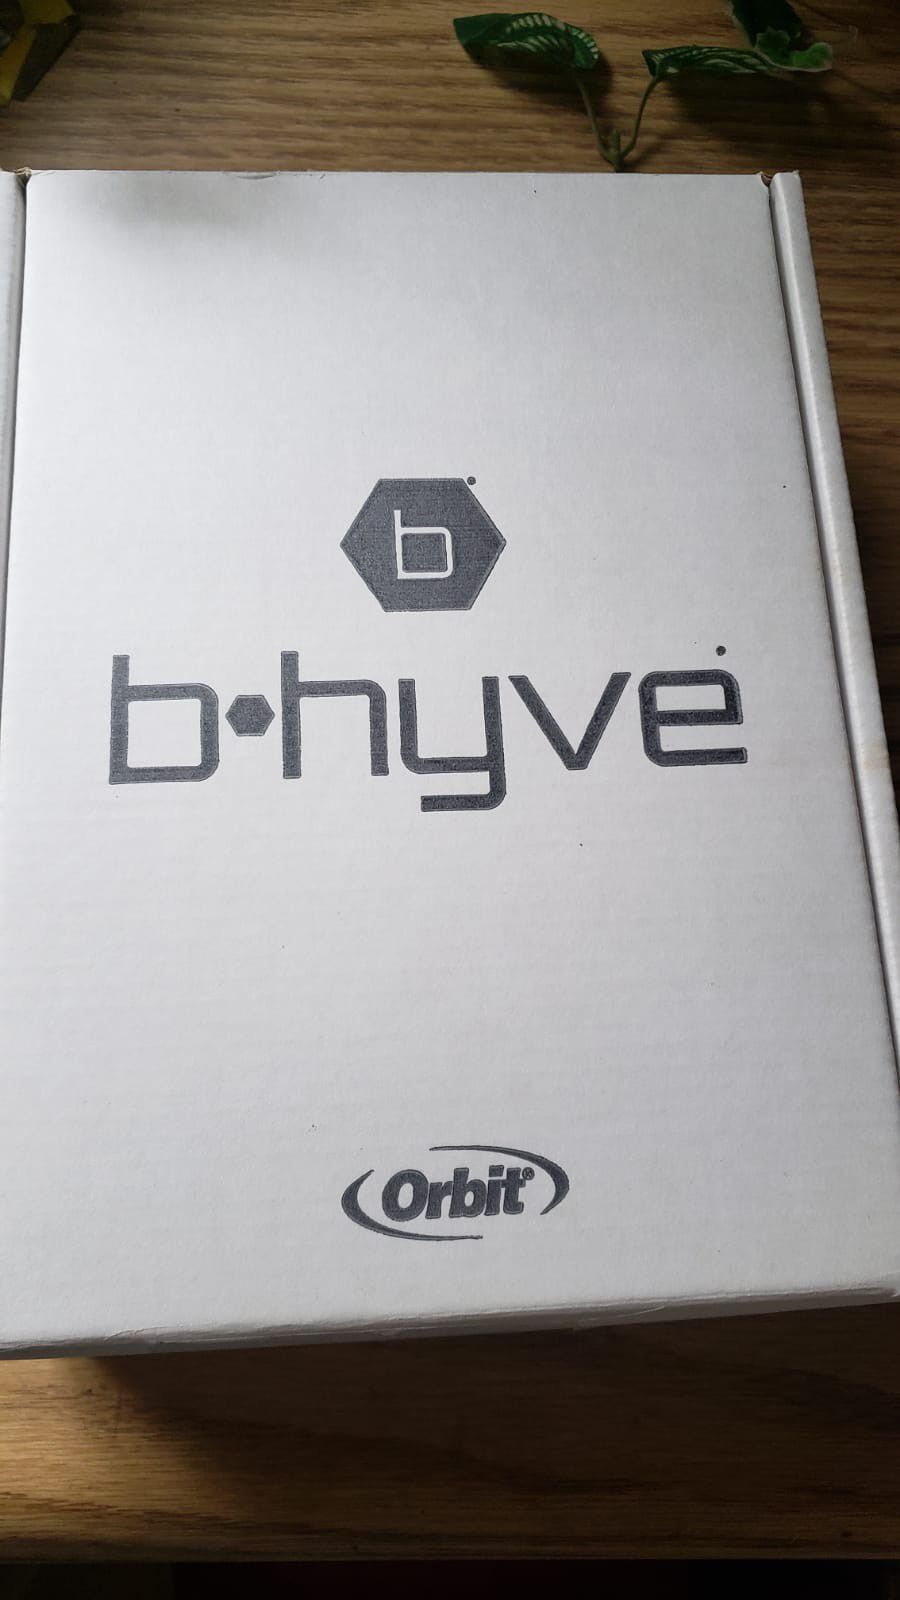 Orbit 57925 B-hyve 8-Zone Smart Indoor Sprinkler Controller

